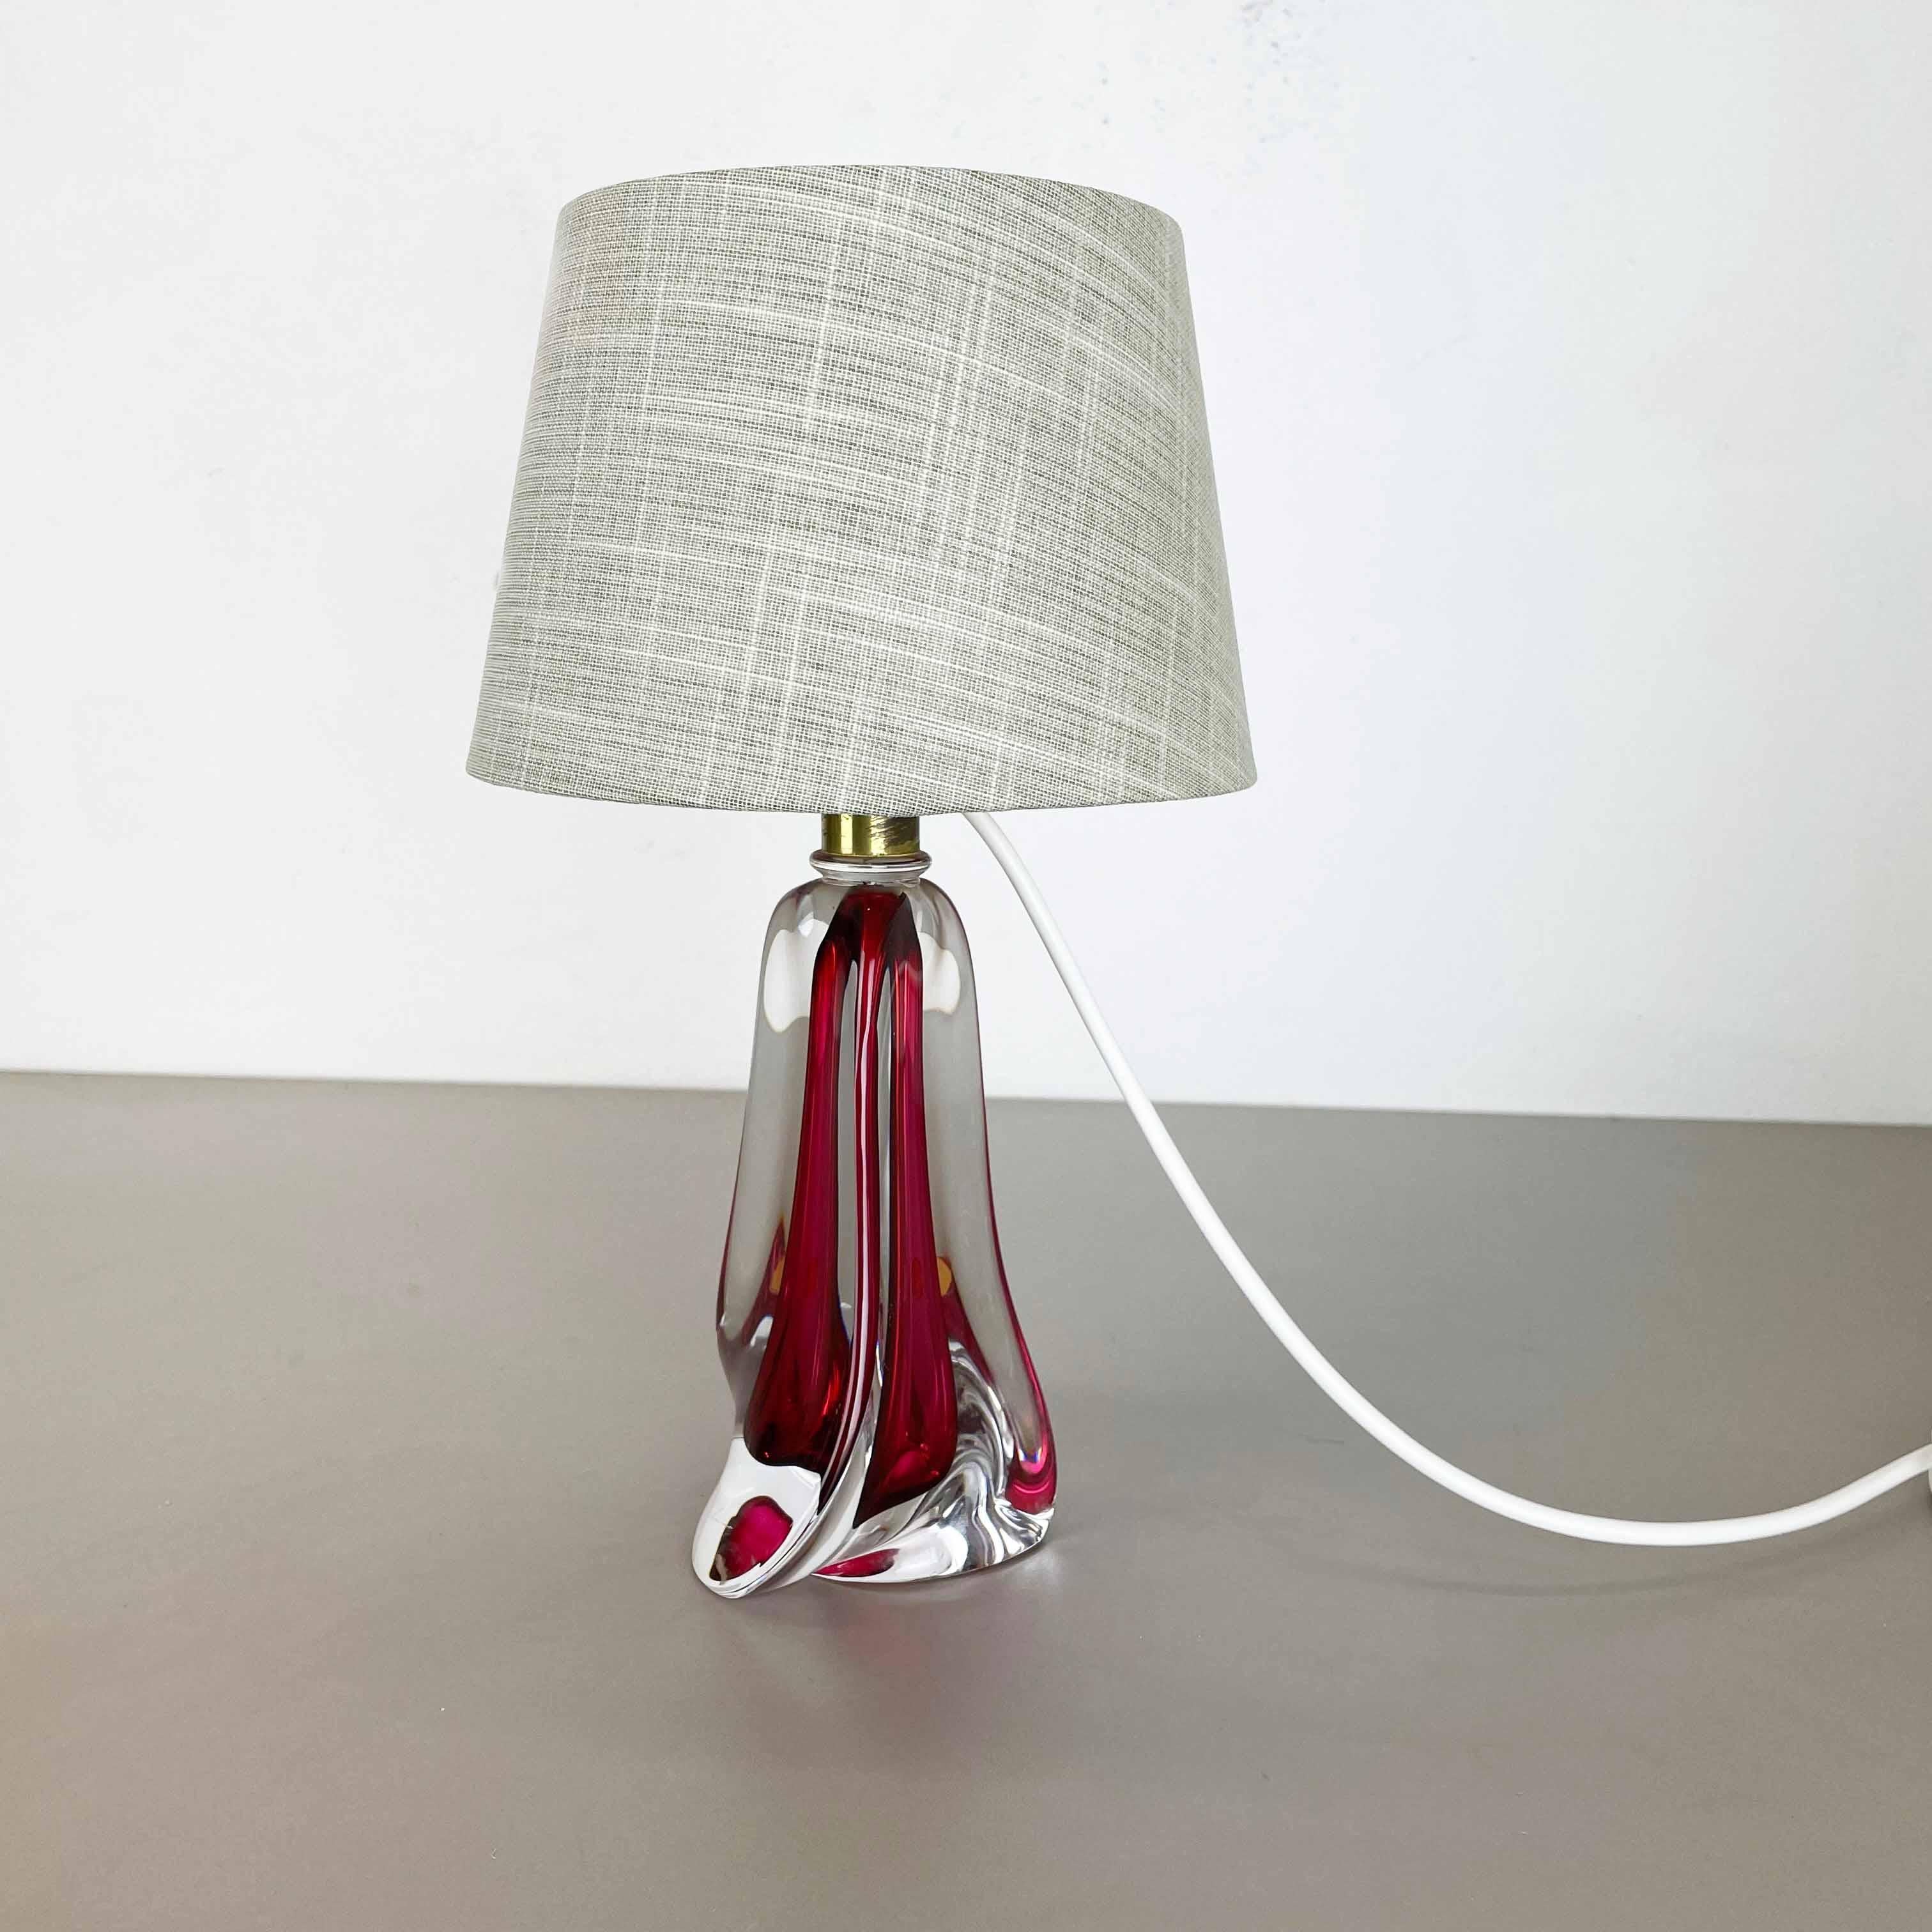 Article :

Lampe de table en cristal



Producteur : 

Val Saint Lambert, Belgique


Origine : 

Belgique


Âge : 

1960s



 

Cette fantastique lampe de table vintage a été conçue et produite par Val Saint Lamberti dans les